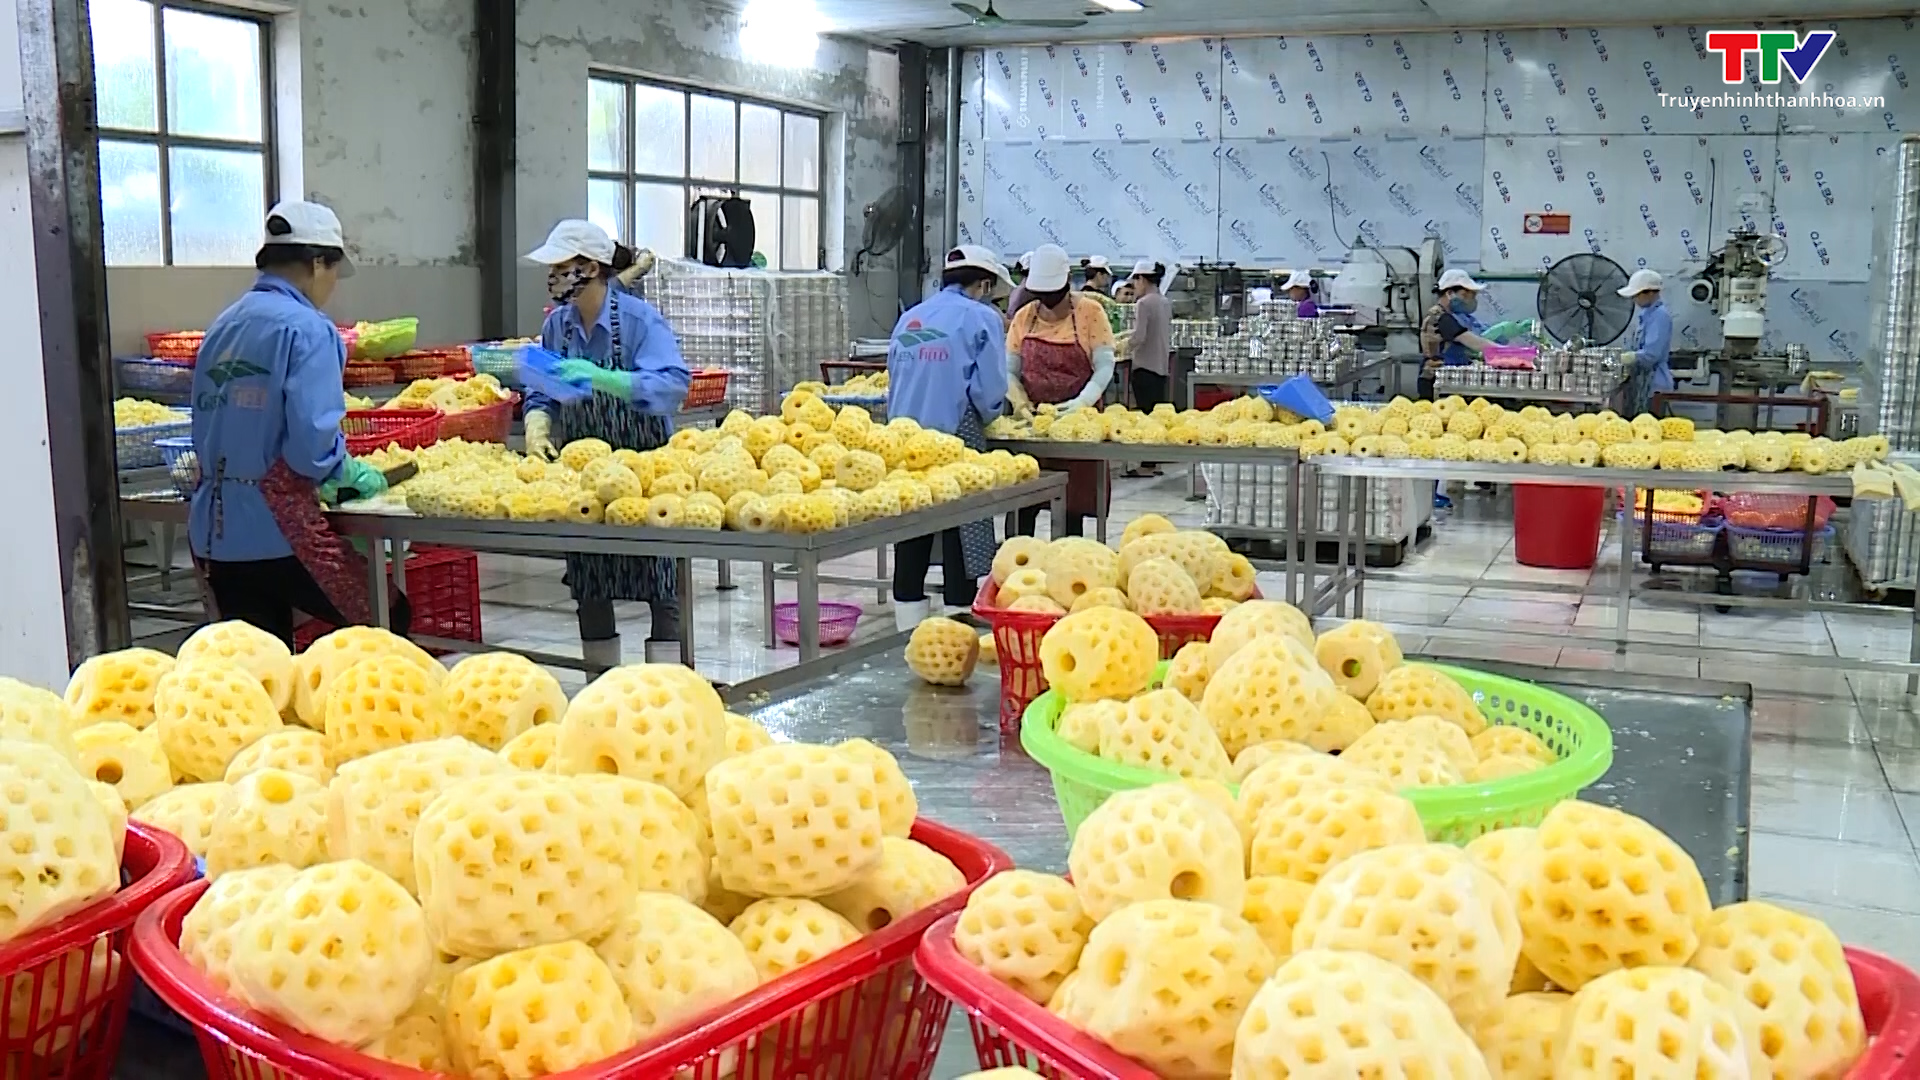 Trung Quốc là điểm sáng cho xuất khẩu nông thủy sản - Ảnh 2.